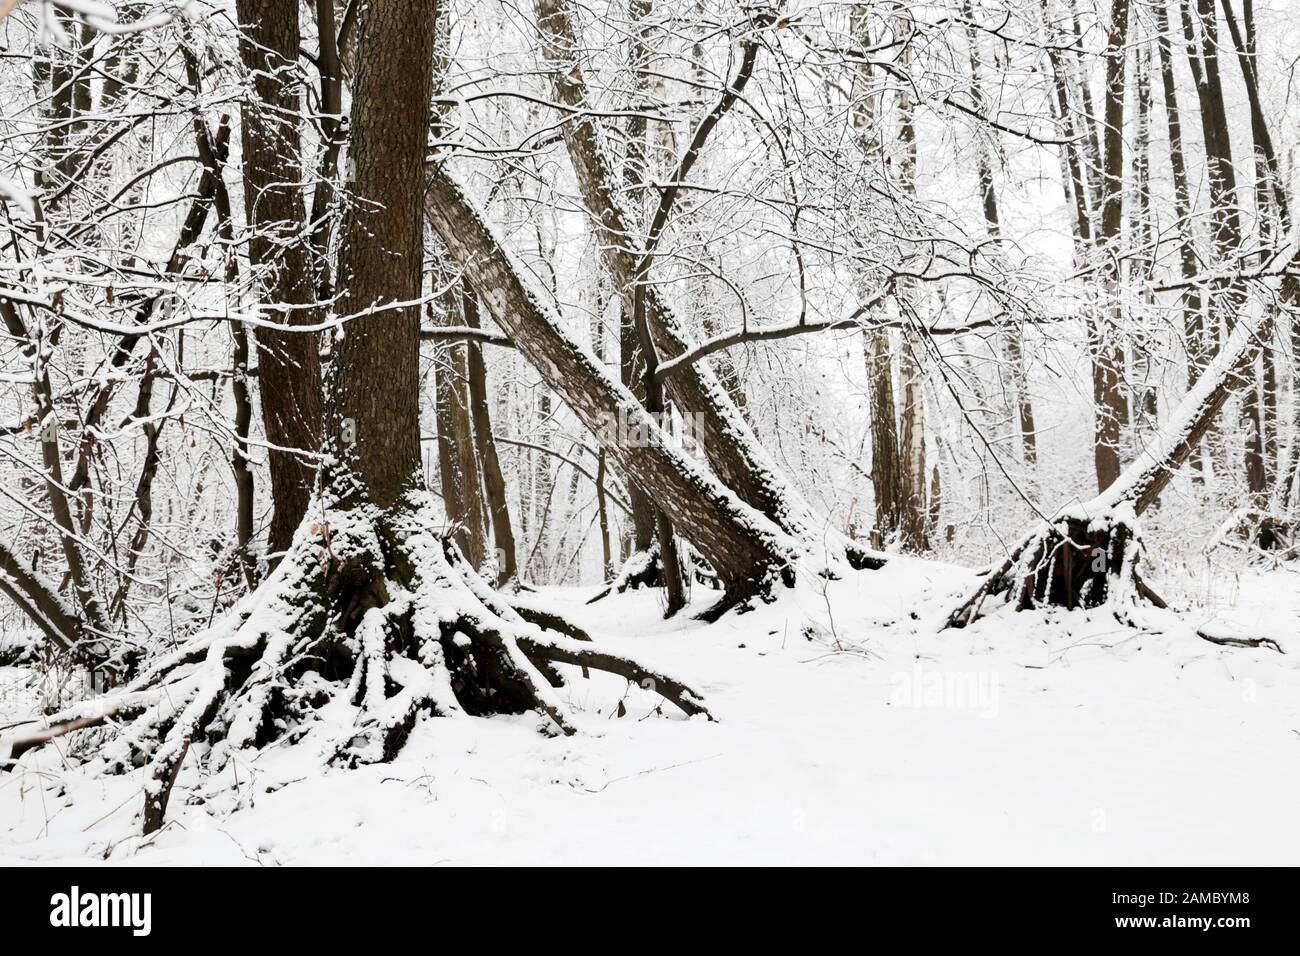 Forêt d'hiver, arbres tombés couverts de neige, vue pittoresque. La nature après la chute de neige, temps froid Banque D'Images